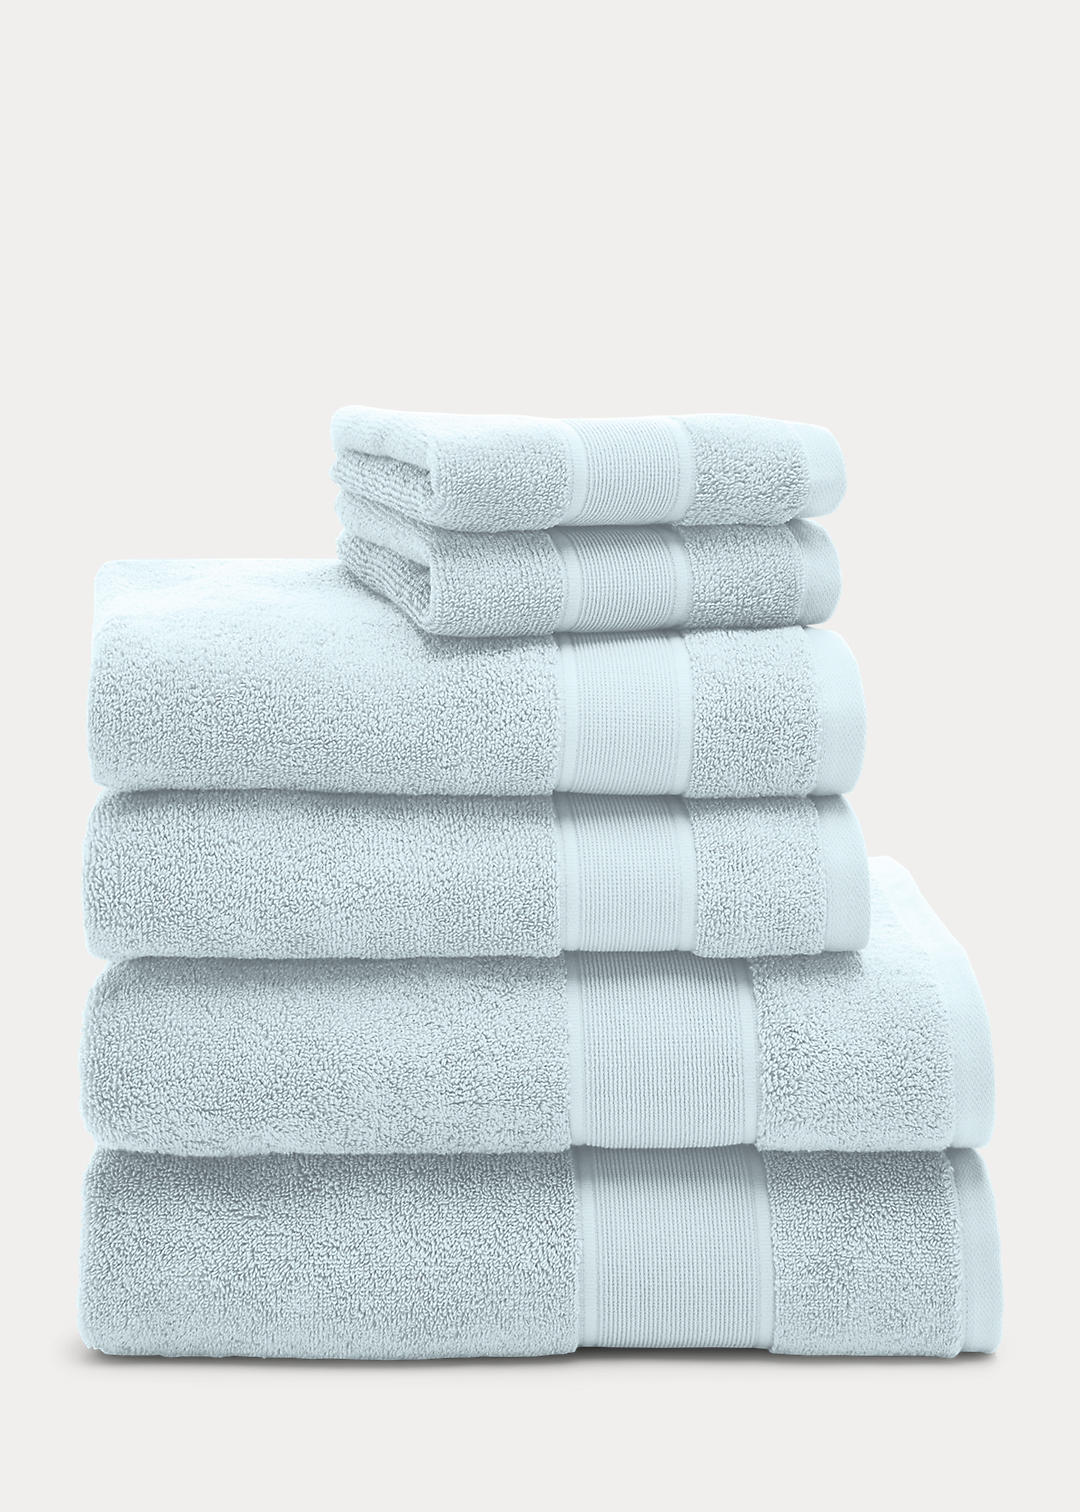 Lauren Home Sanders 6-Piece Towel Set